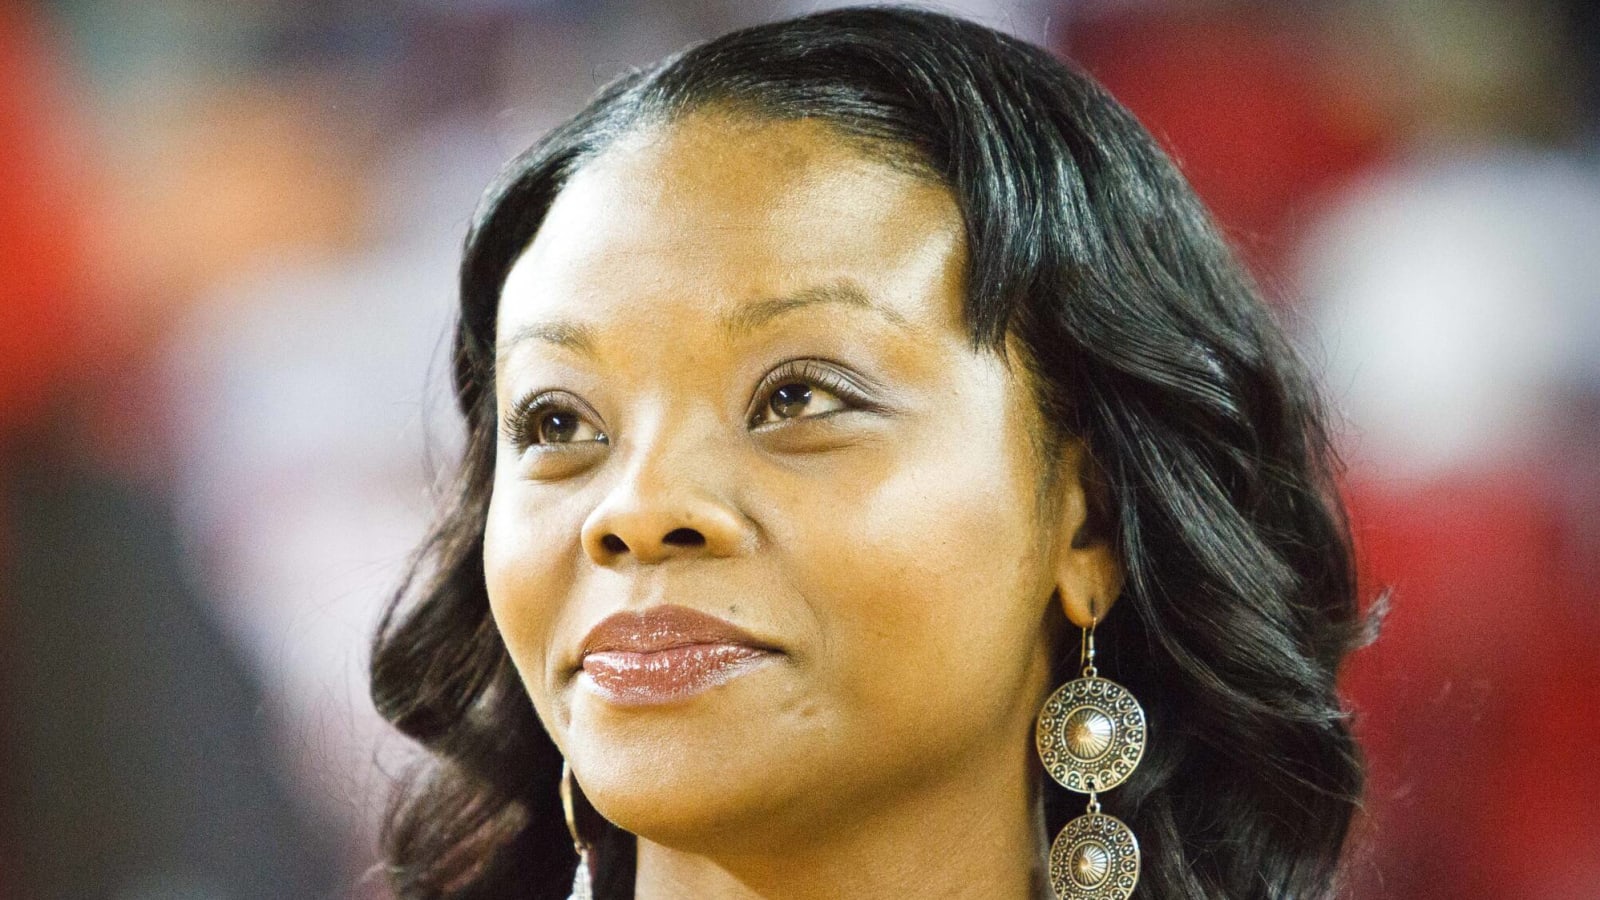 Georgetown coach Tasha Butts dies at 41